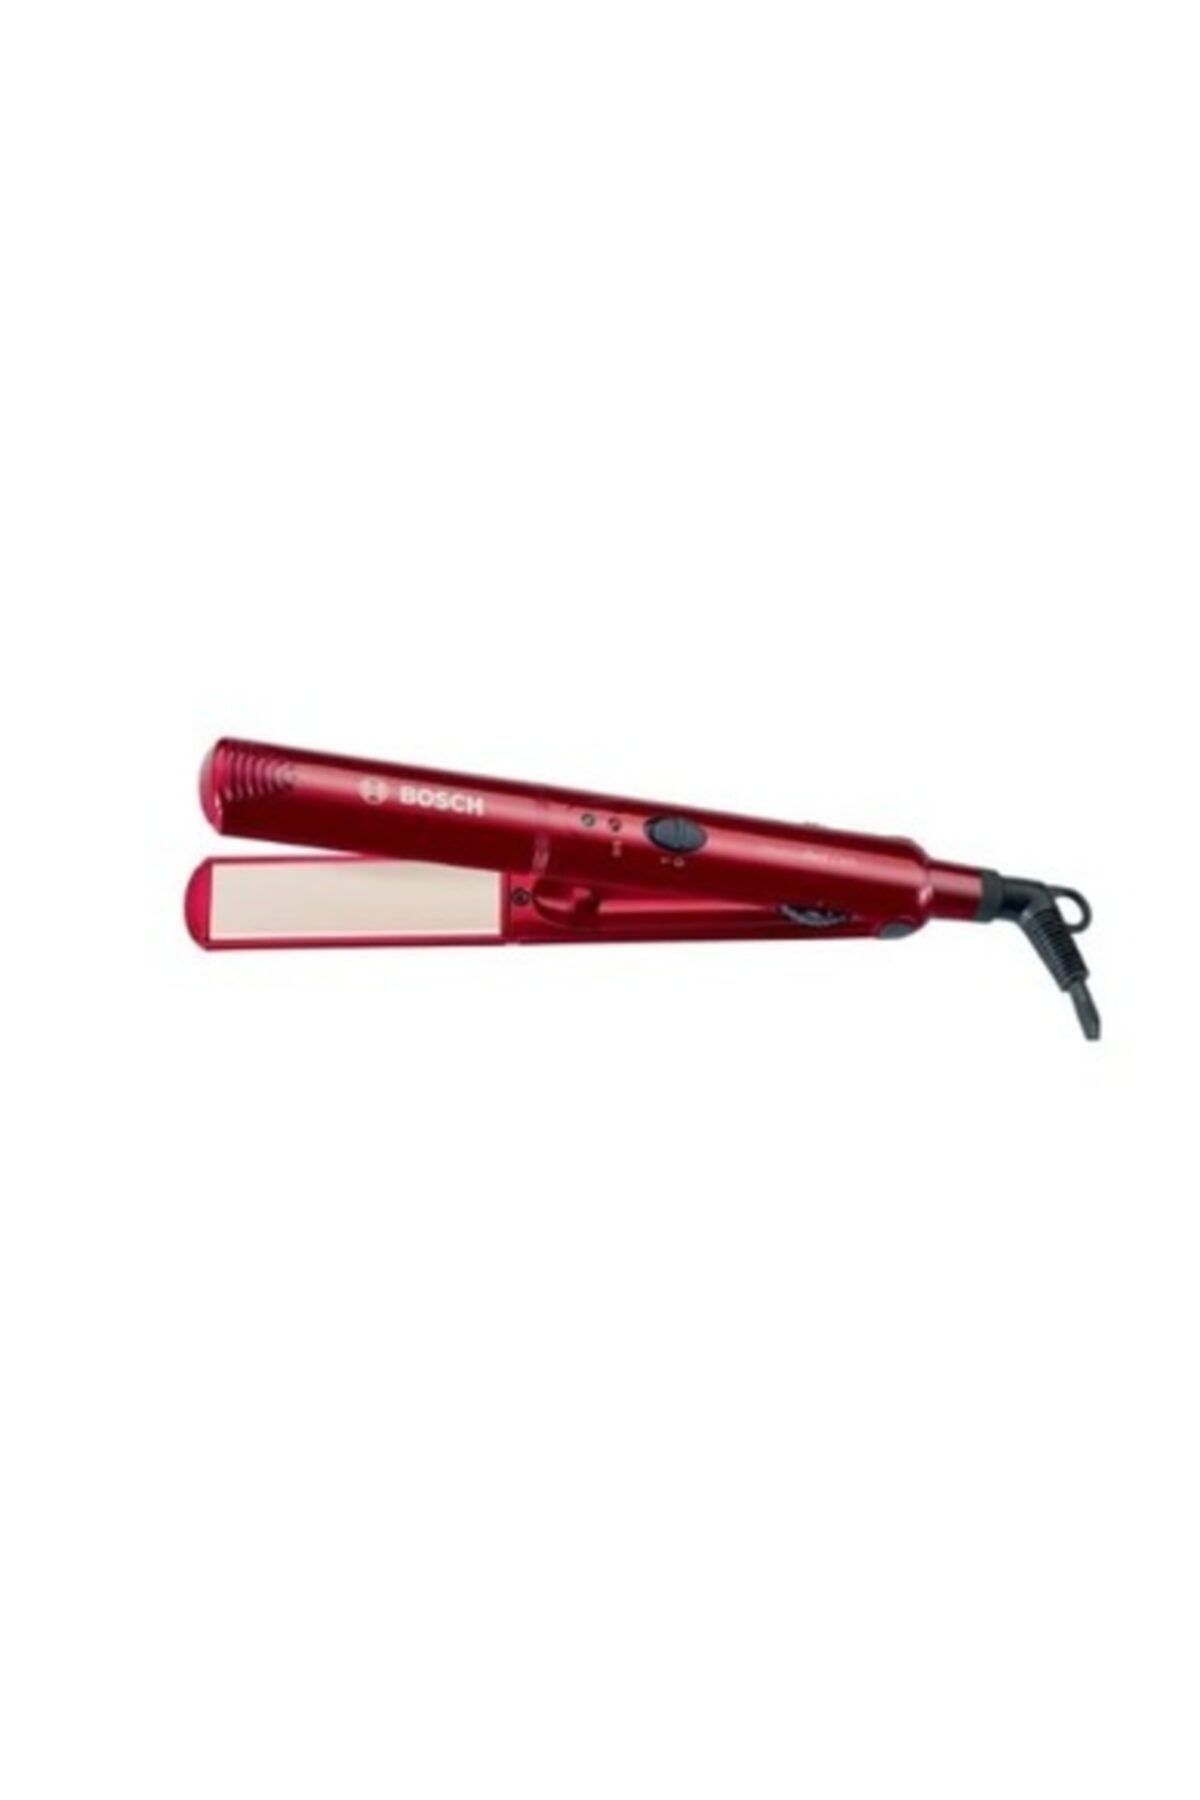 Bosch Phs2102 Glamou Red Care Saç Düzleştirici